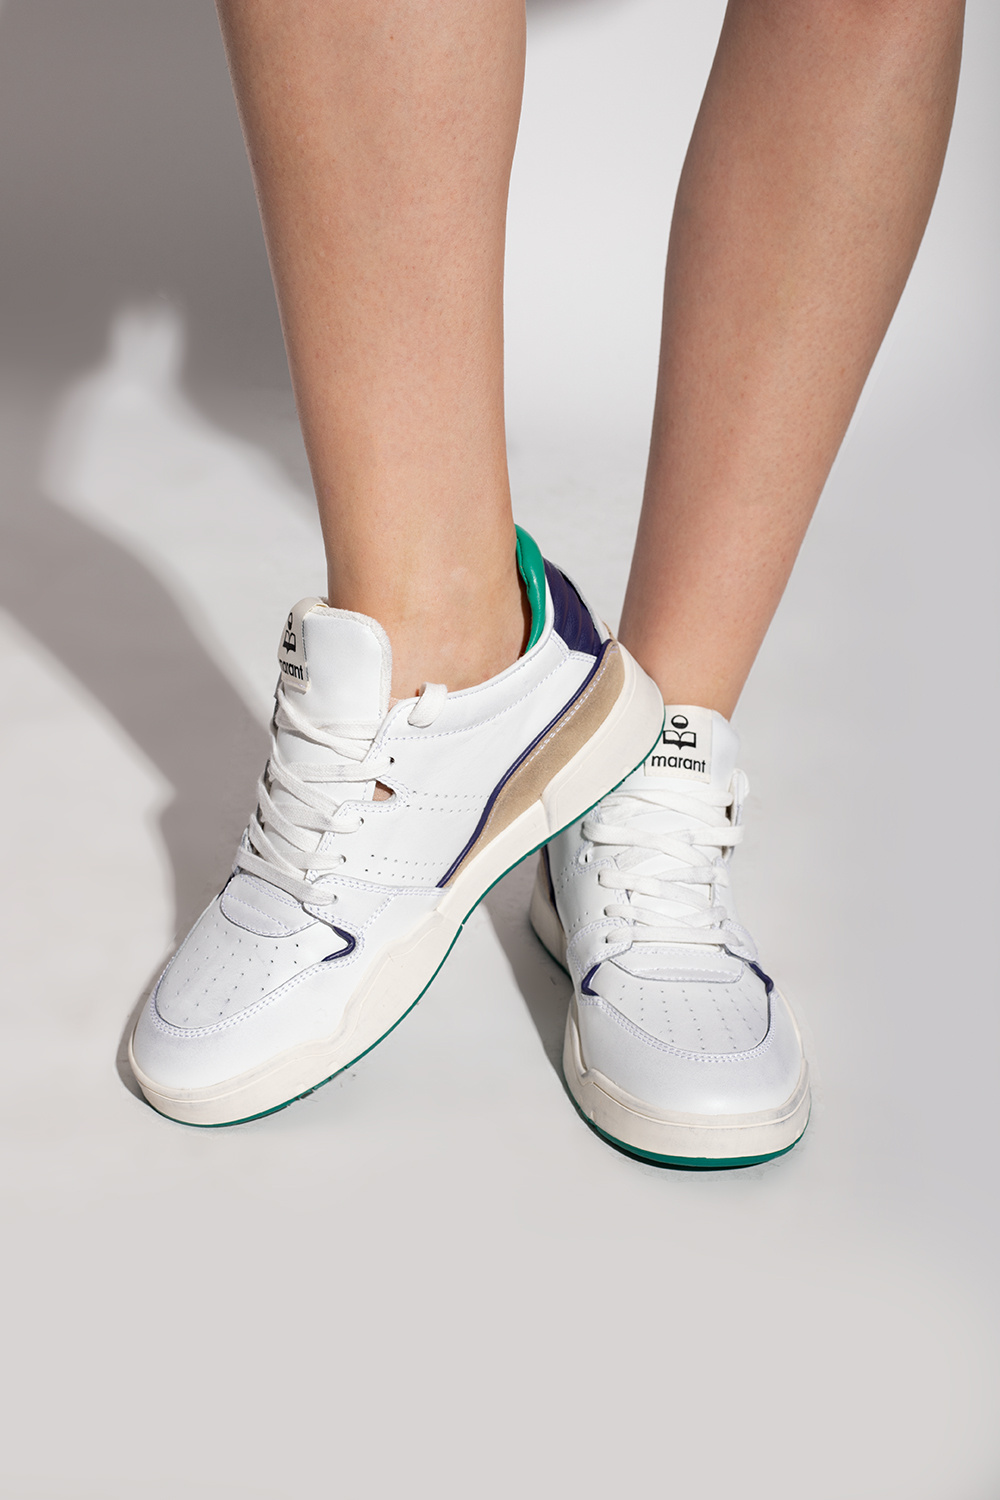 Isabel Marant 'Trash' sneakers | zapatillas de running Adidas mujer tope amortiguación ritmo bajo 43.5 más 100 IetpShops | Women's Shoes